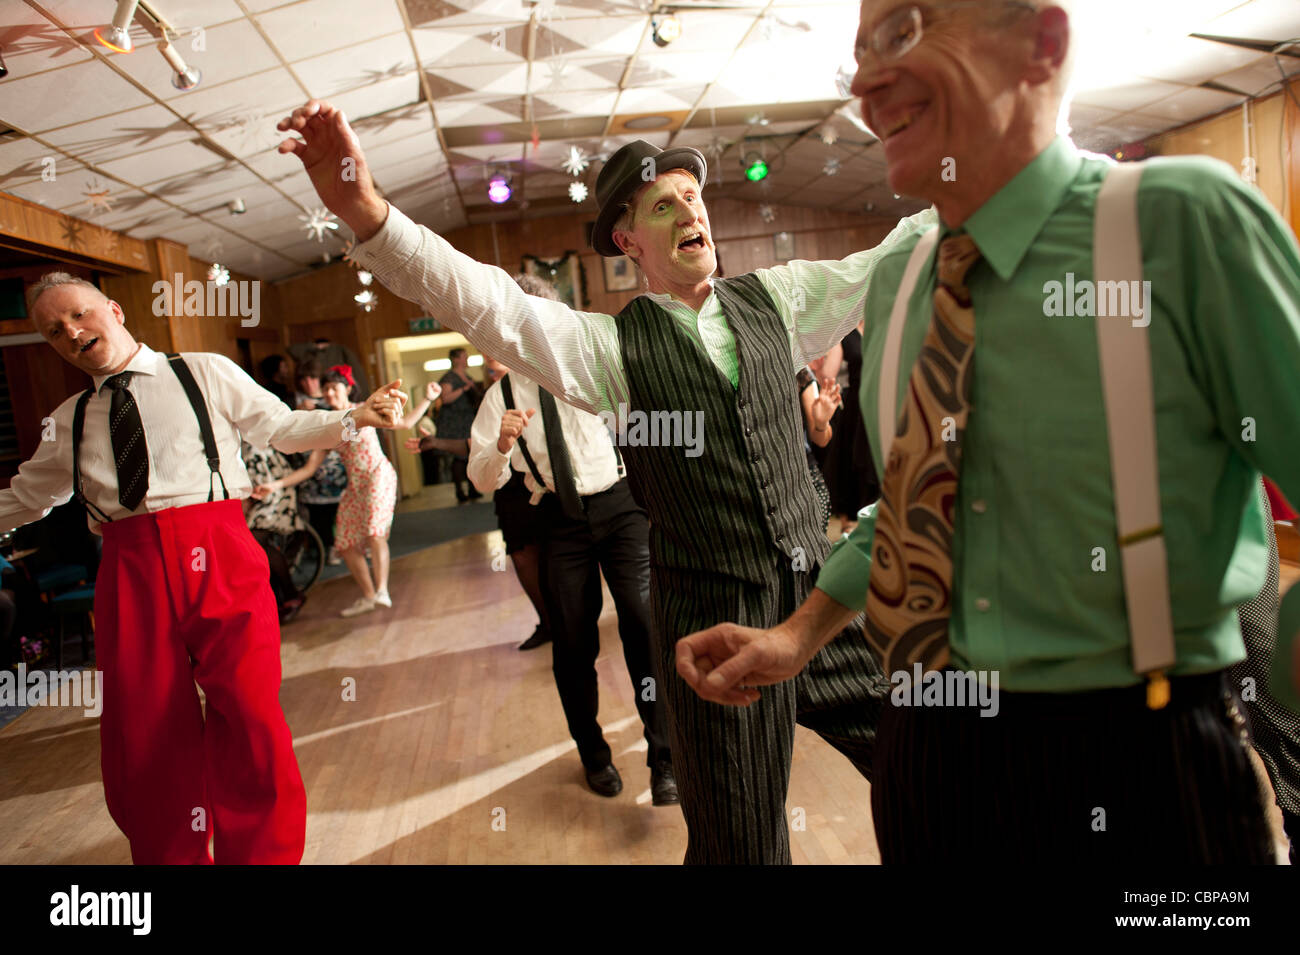 Les hommes La danse swing Lindy hopping et jiving à retro 40s 50s musique à un club, UK Banque D'Images